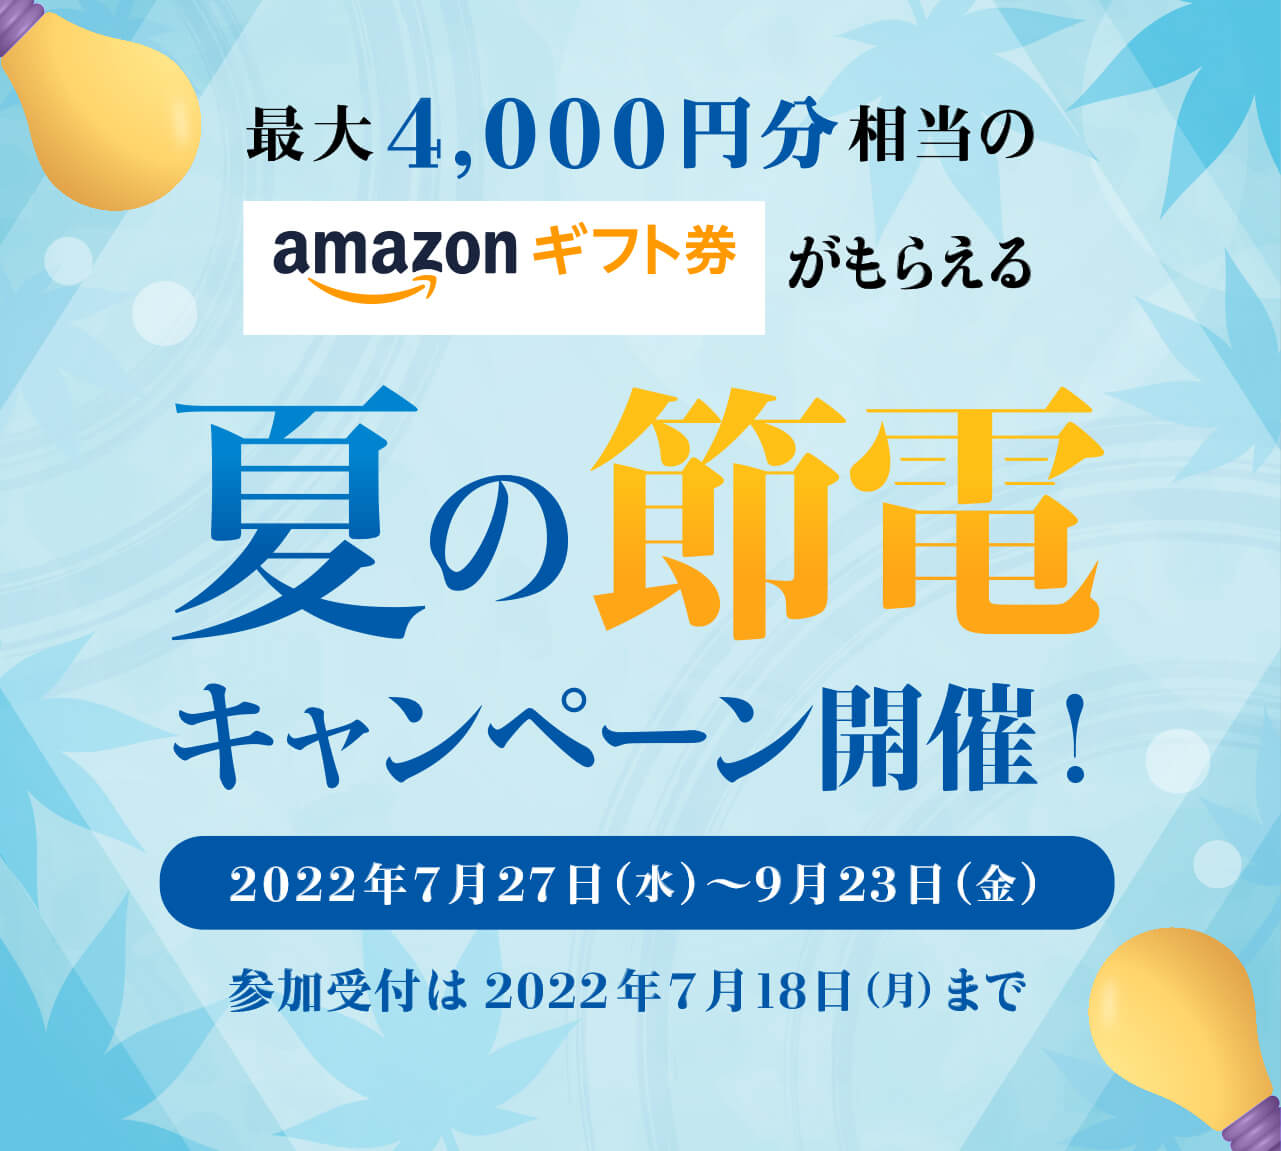 最大4,000円分相当のamazonギフト券がもらえる夏の節電キャンペーン開催！2022年7月27日（水）〜9月23日（金）参加受付は2022年7月18日（月）まで